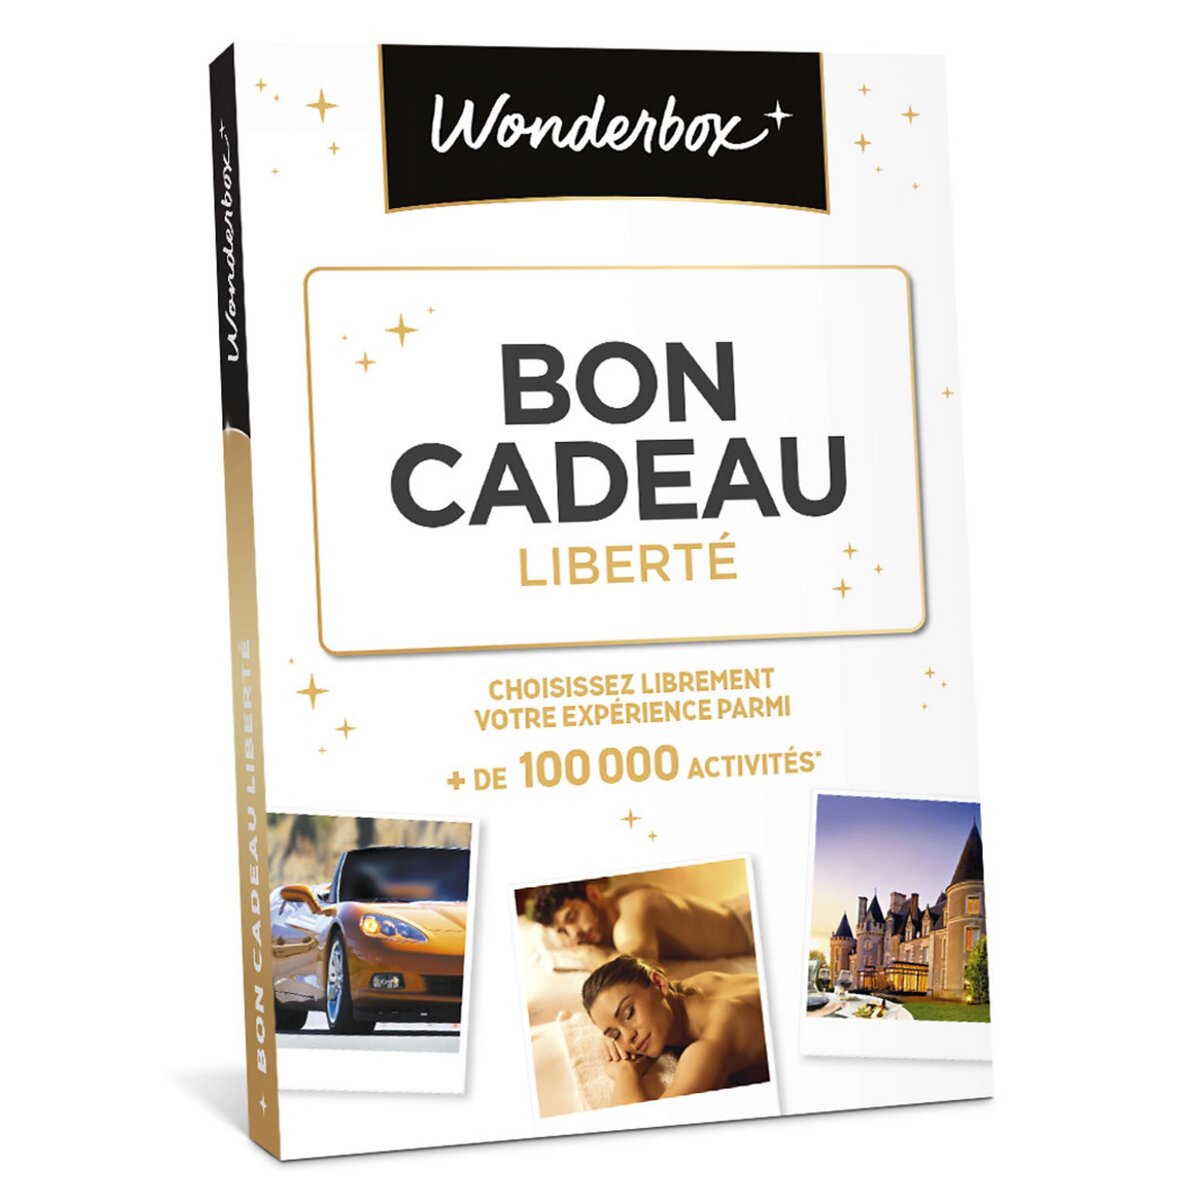 Wonderbox Bon Cadeau Liberté